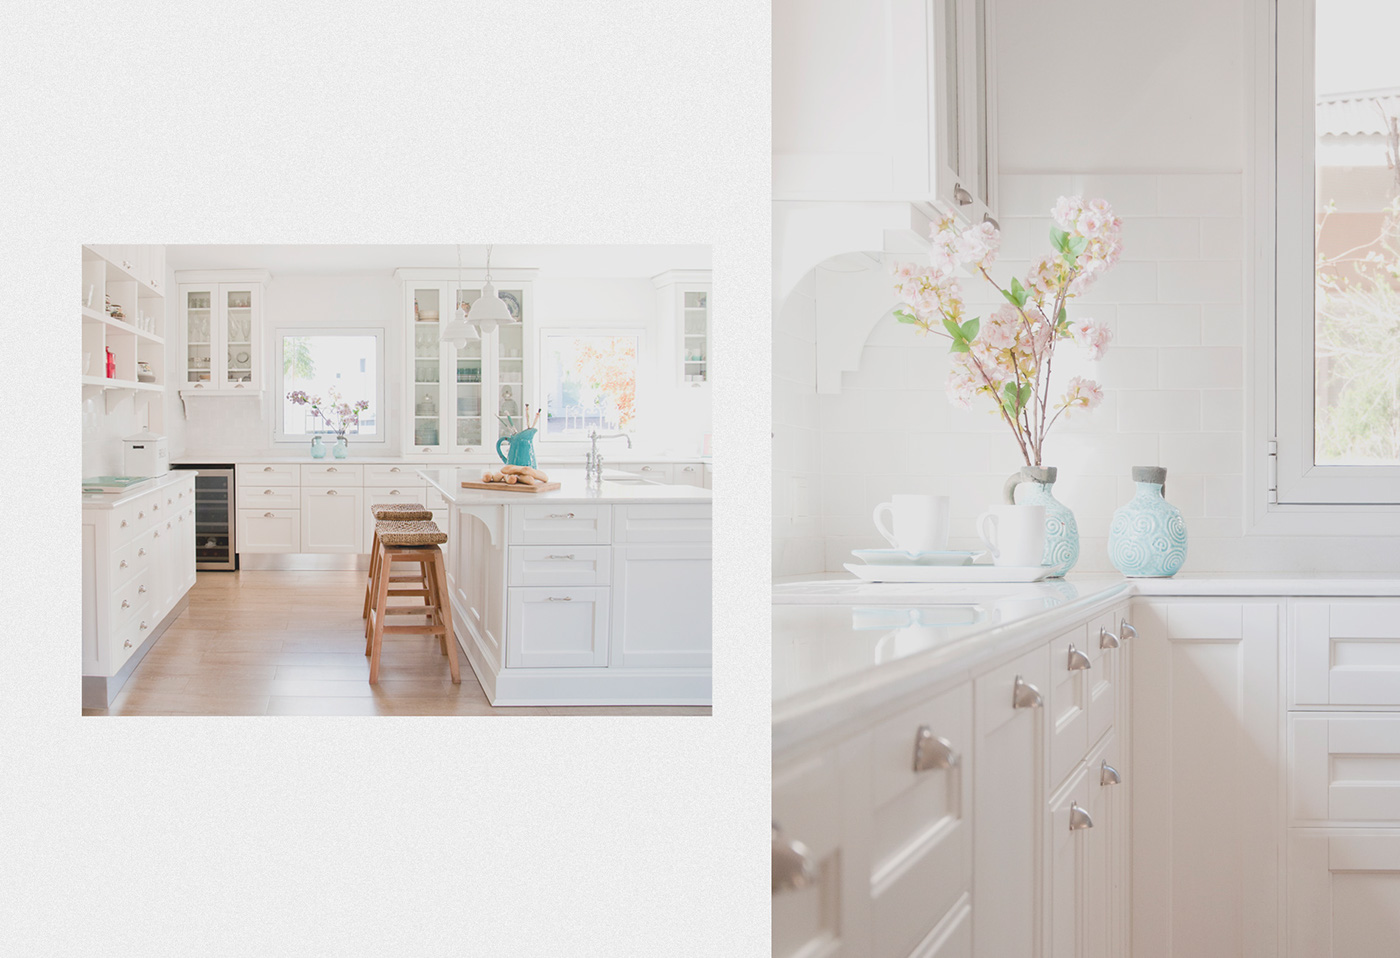 Cocinas kitchen blanco White minimal spaces espacios Ambientes ambients house casa